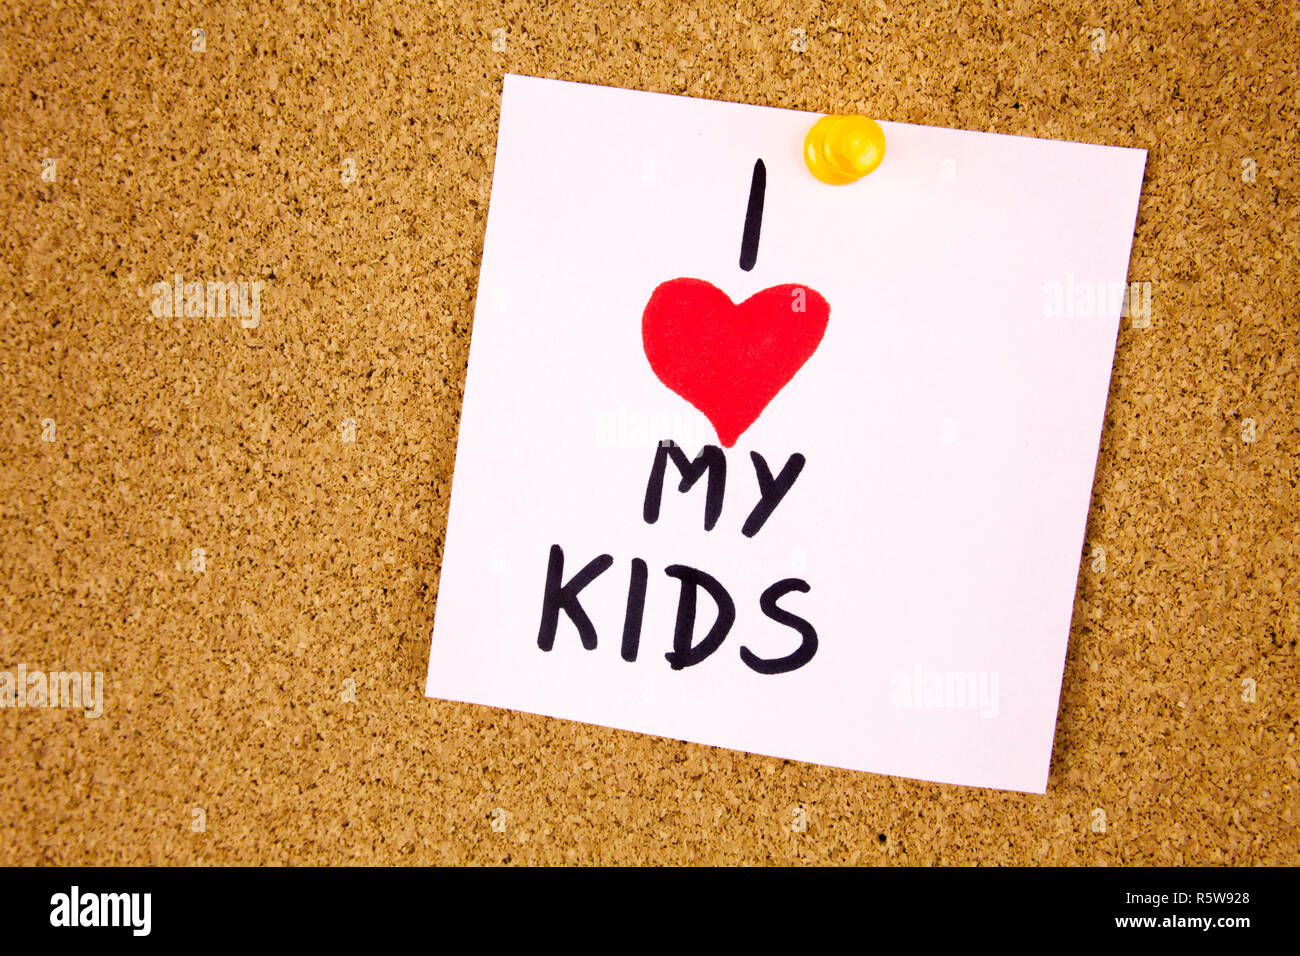 Ich Liebe Meine Kinder Konzept Mit Bunten Schreiben Auf Cork Board Hintergrund Stockfotografie Alamy